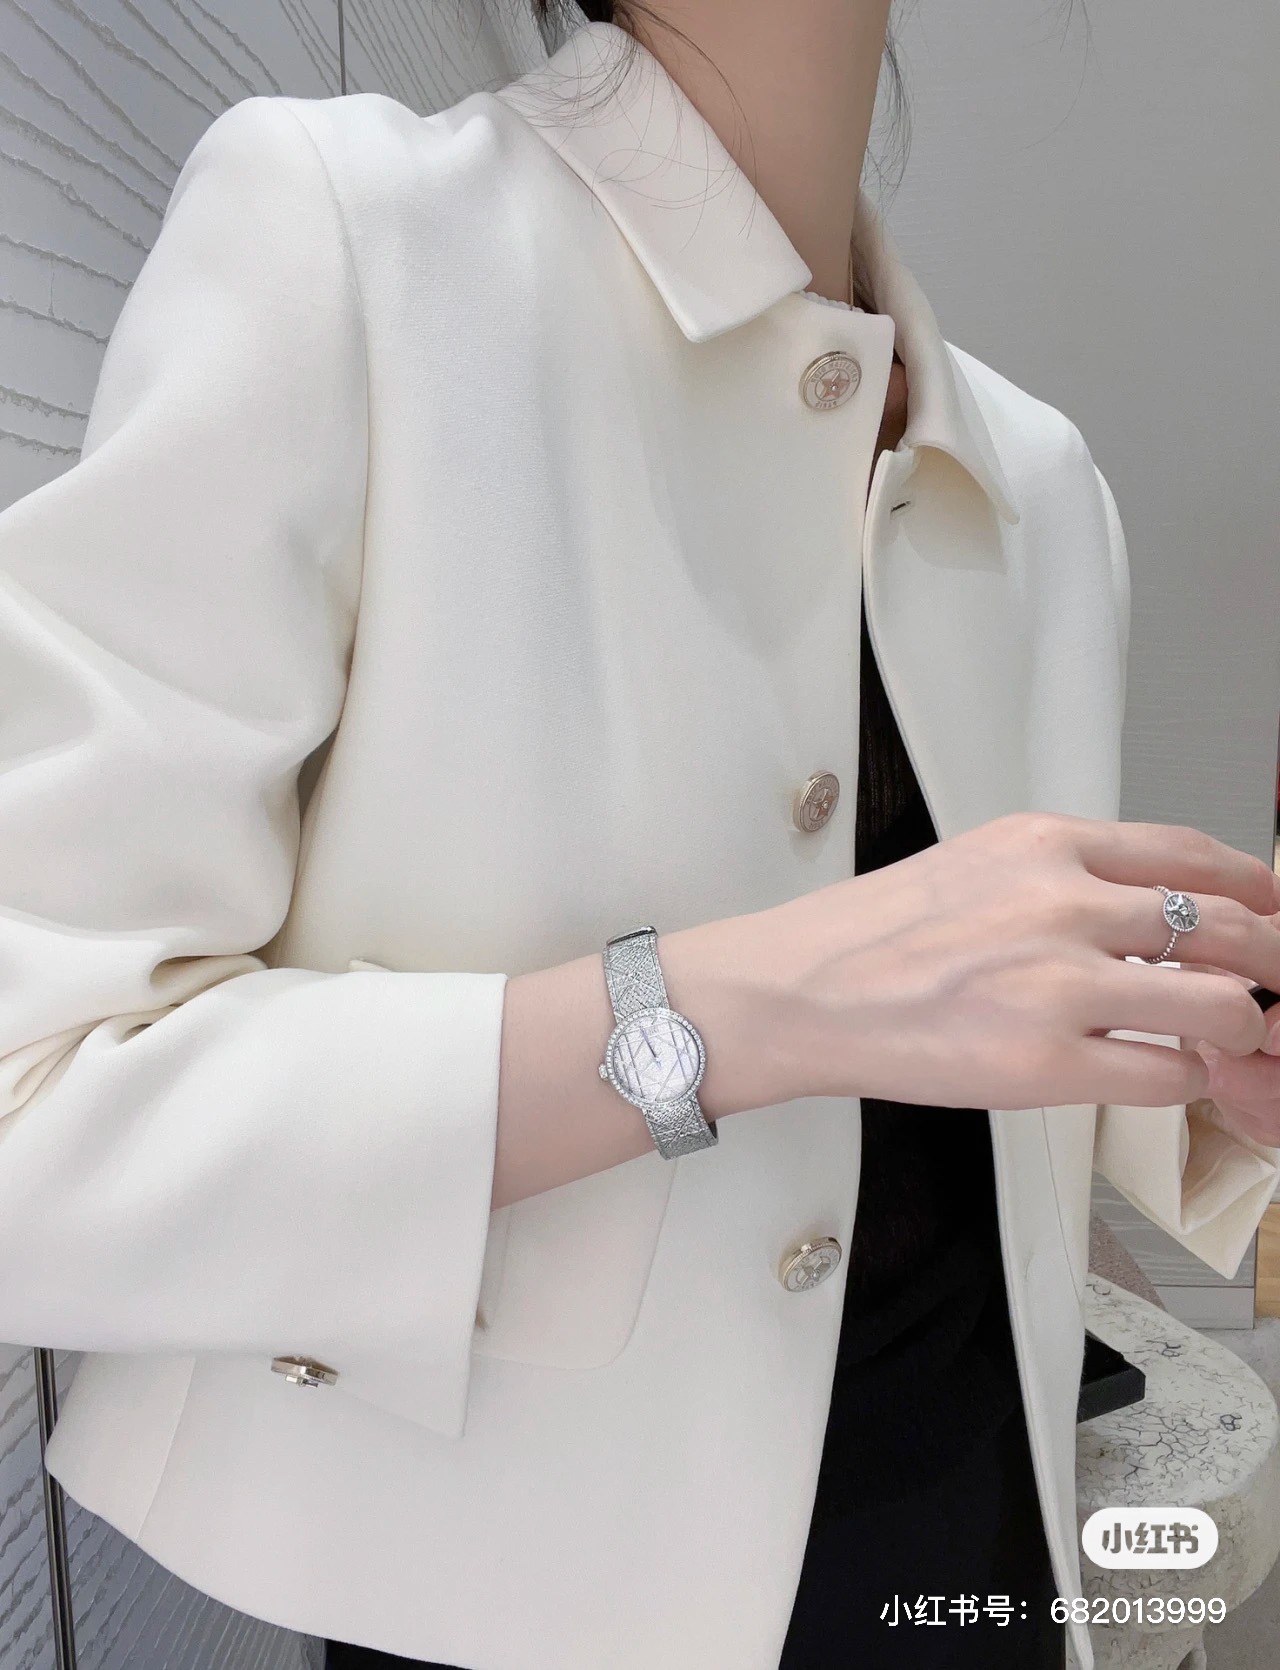 最新作 人気定番 爆買い 腕時計 ディオール偽物 優美な曲線デザイン ダイヤモンド_2